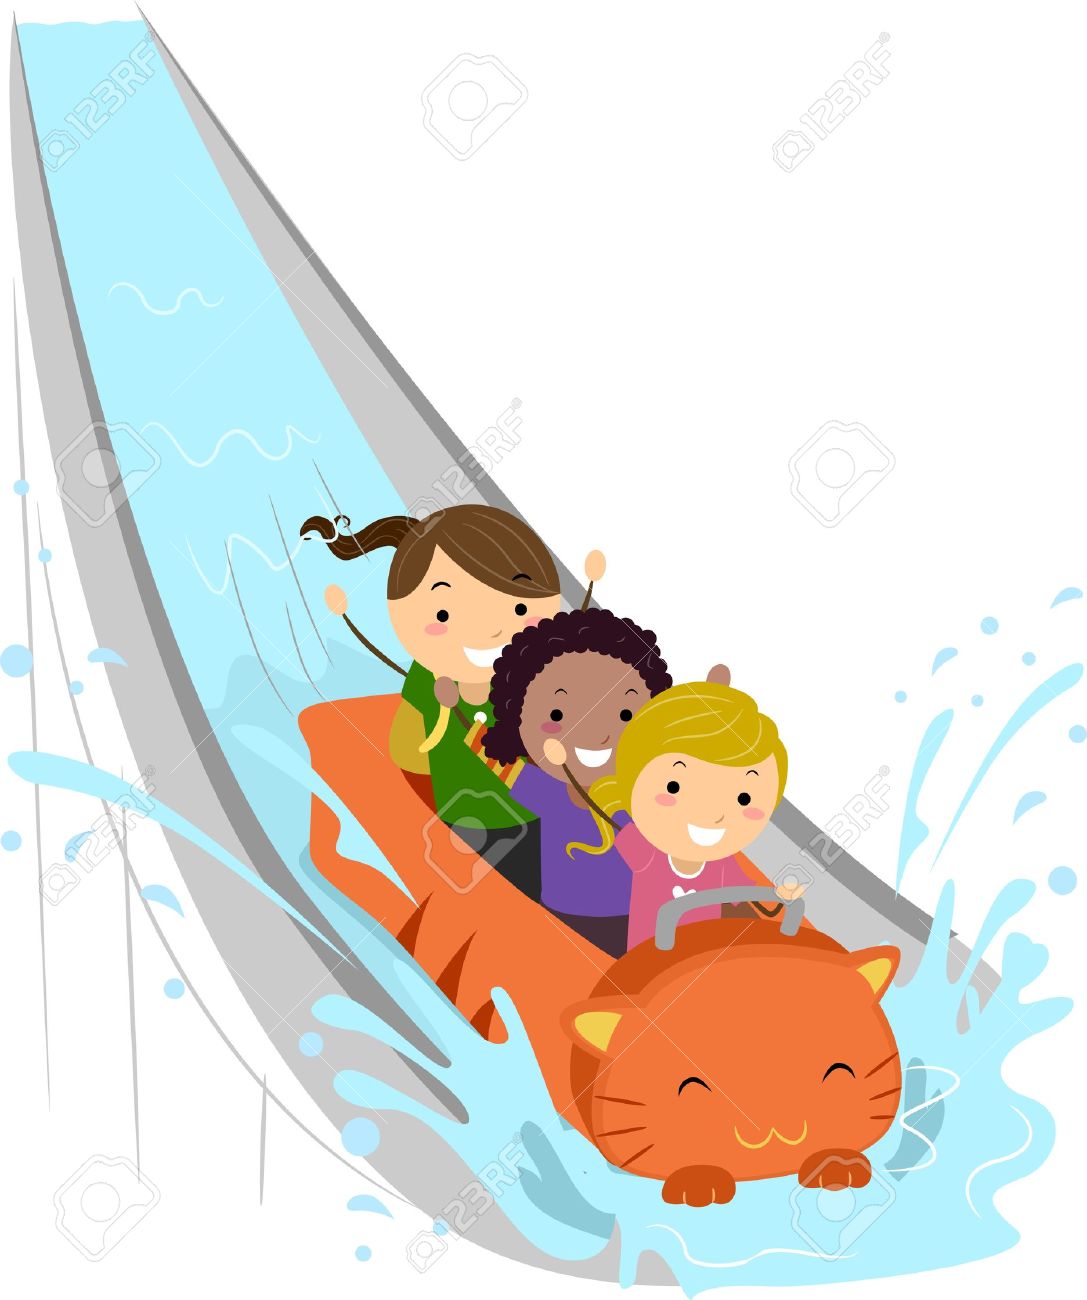 Kids Enjoying a Water Ride